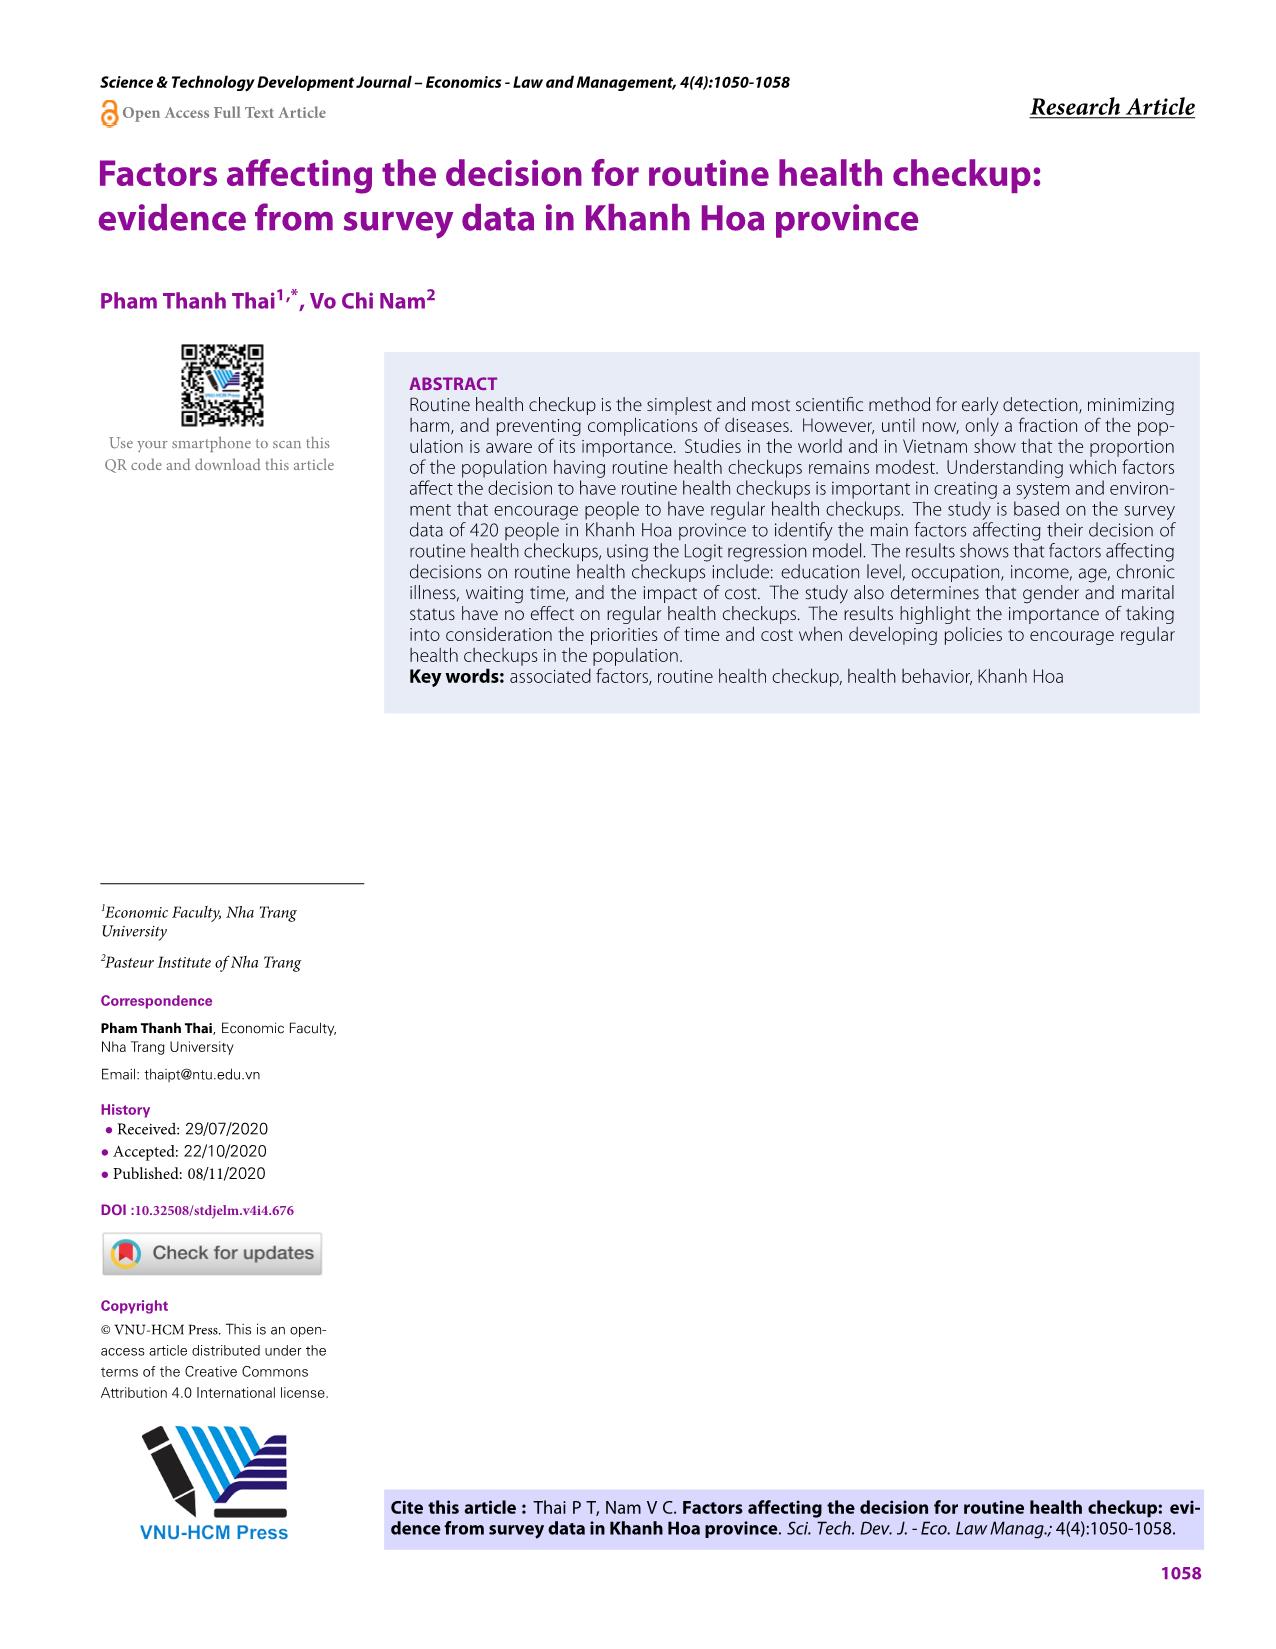 Các yếu tố ảnh hưởng đến quyết định kiểm tra sức khỏe định kỳ: bằng chứng từ dữ liệu khảo sát người dân tại tỉnh Khánh Hòa trang 9